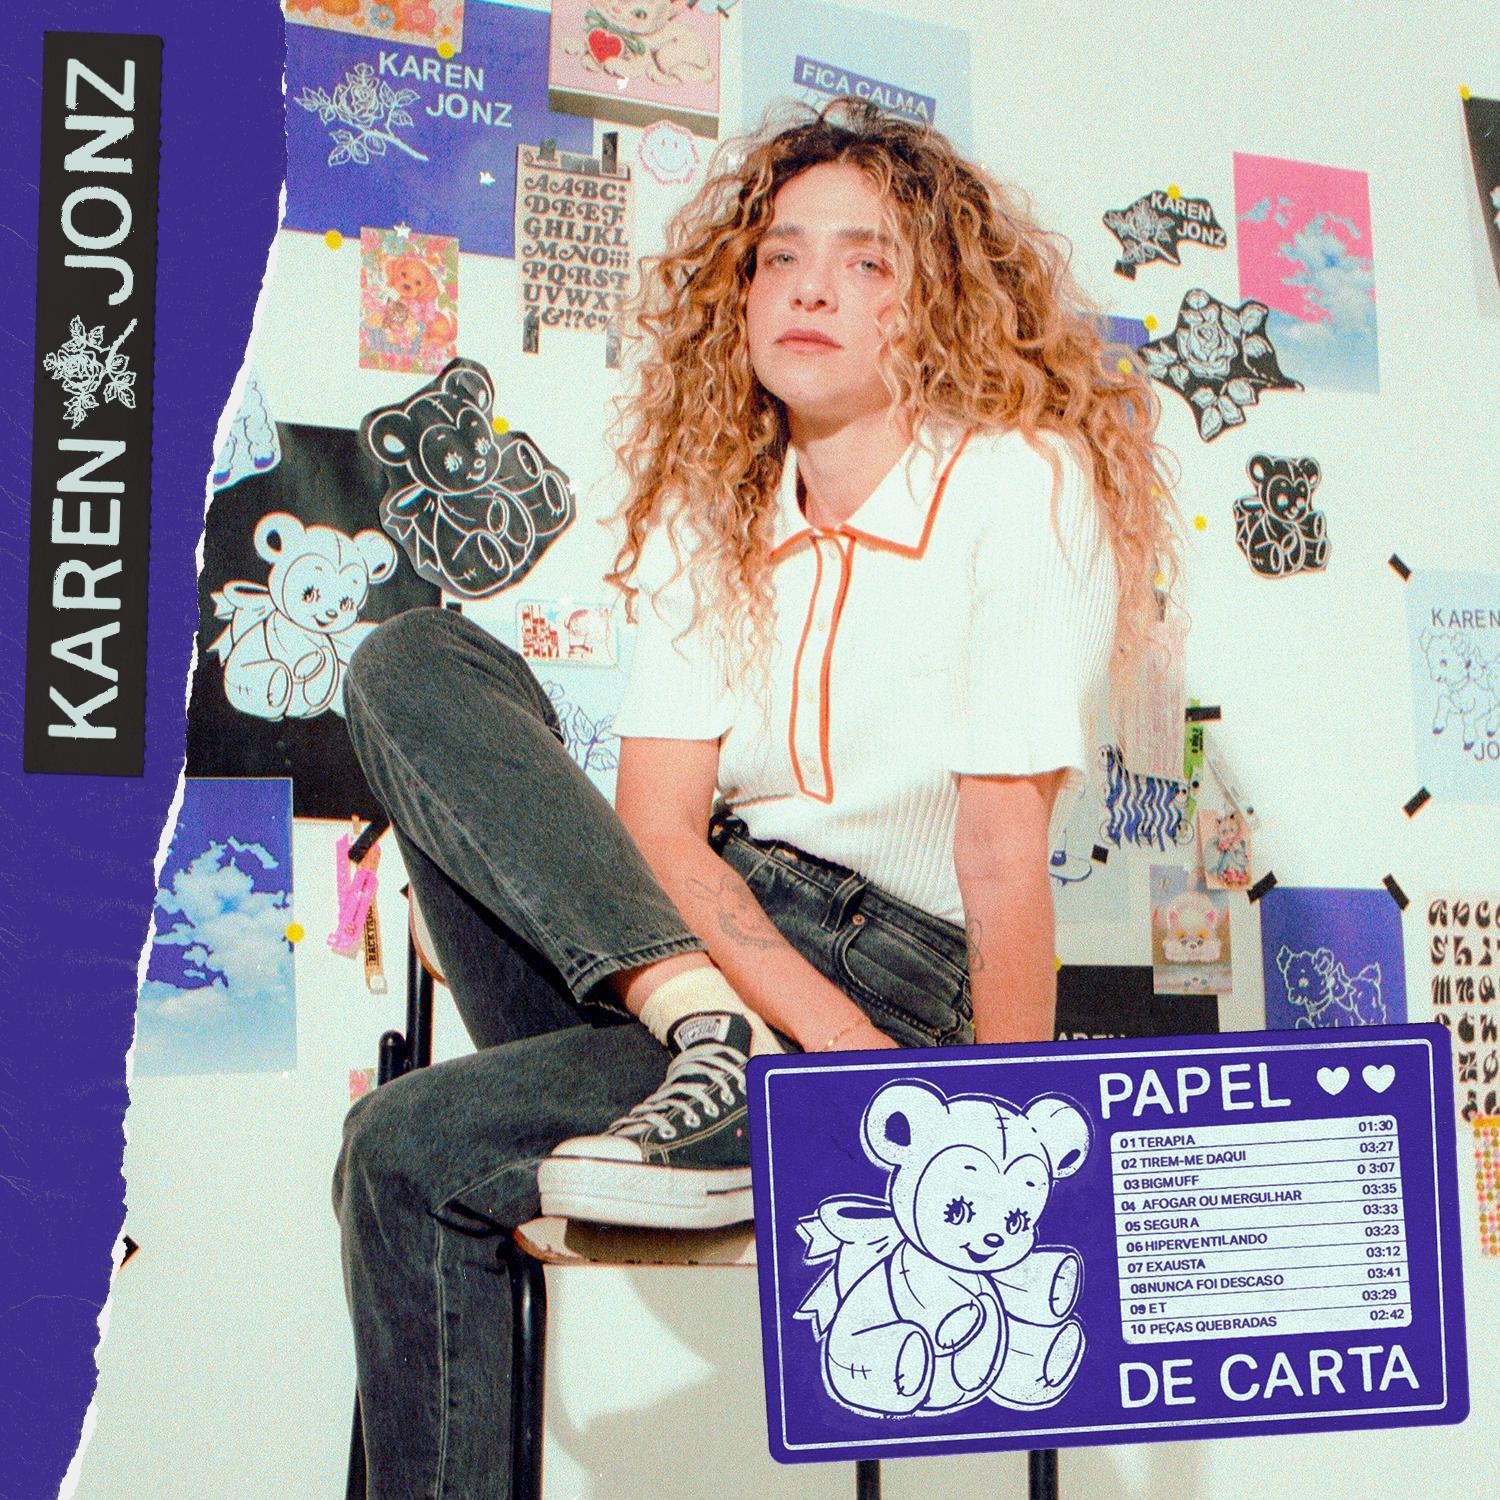 Karen Jonz - Nunca foi descaso (feat. Gab Ferreira)